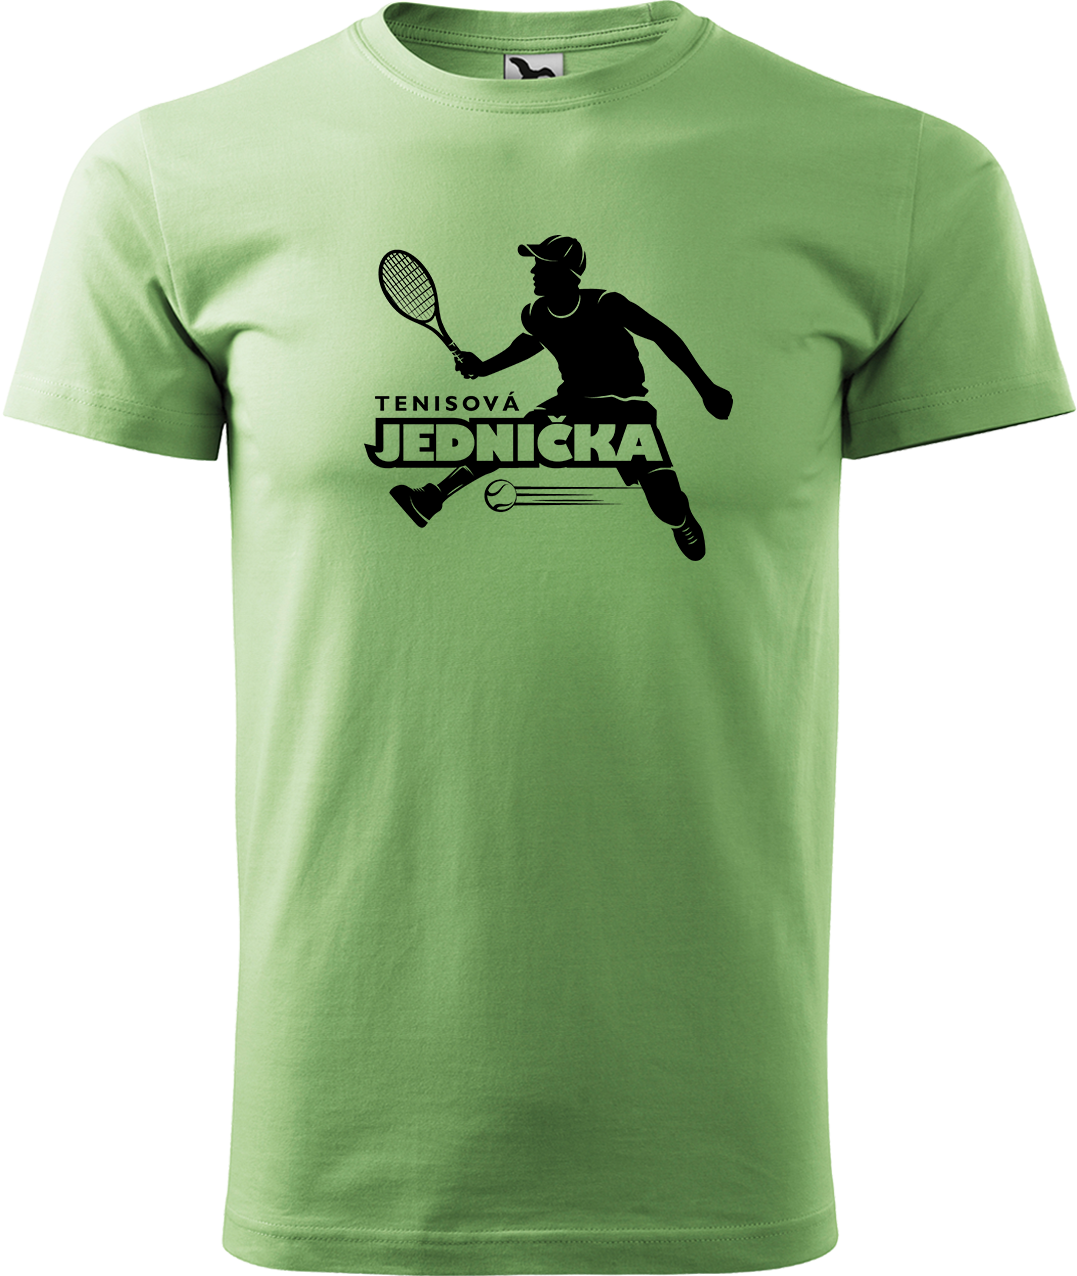 Tenisové tričko - Tenisová jednička Velikost: M, Barva: Trávově zelená (39)